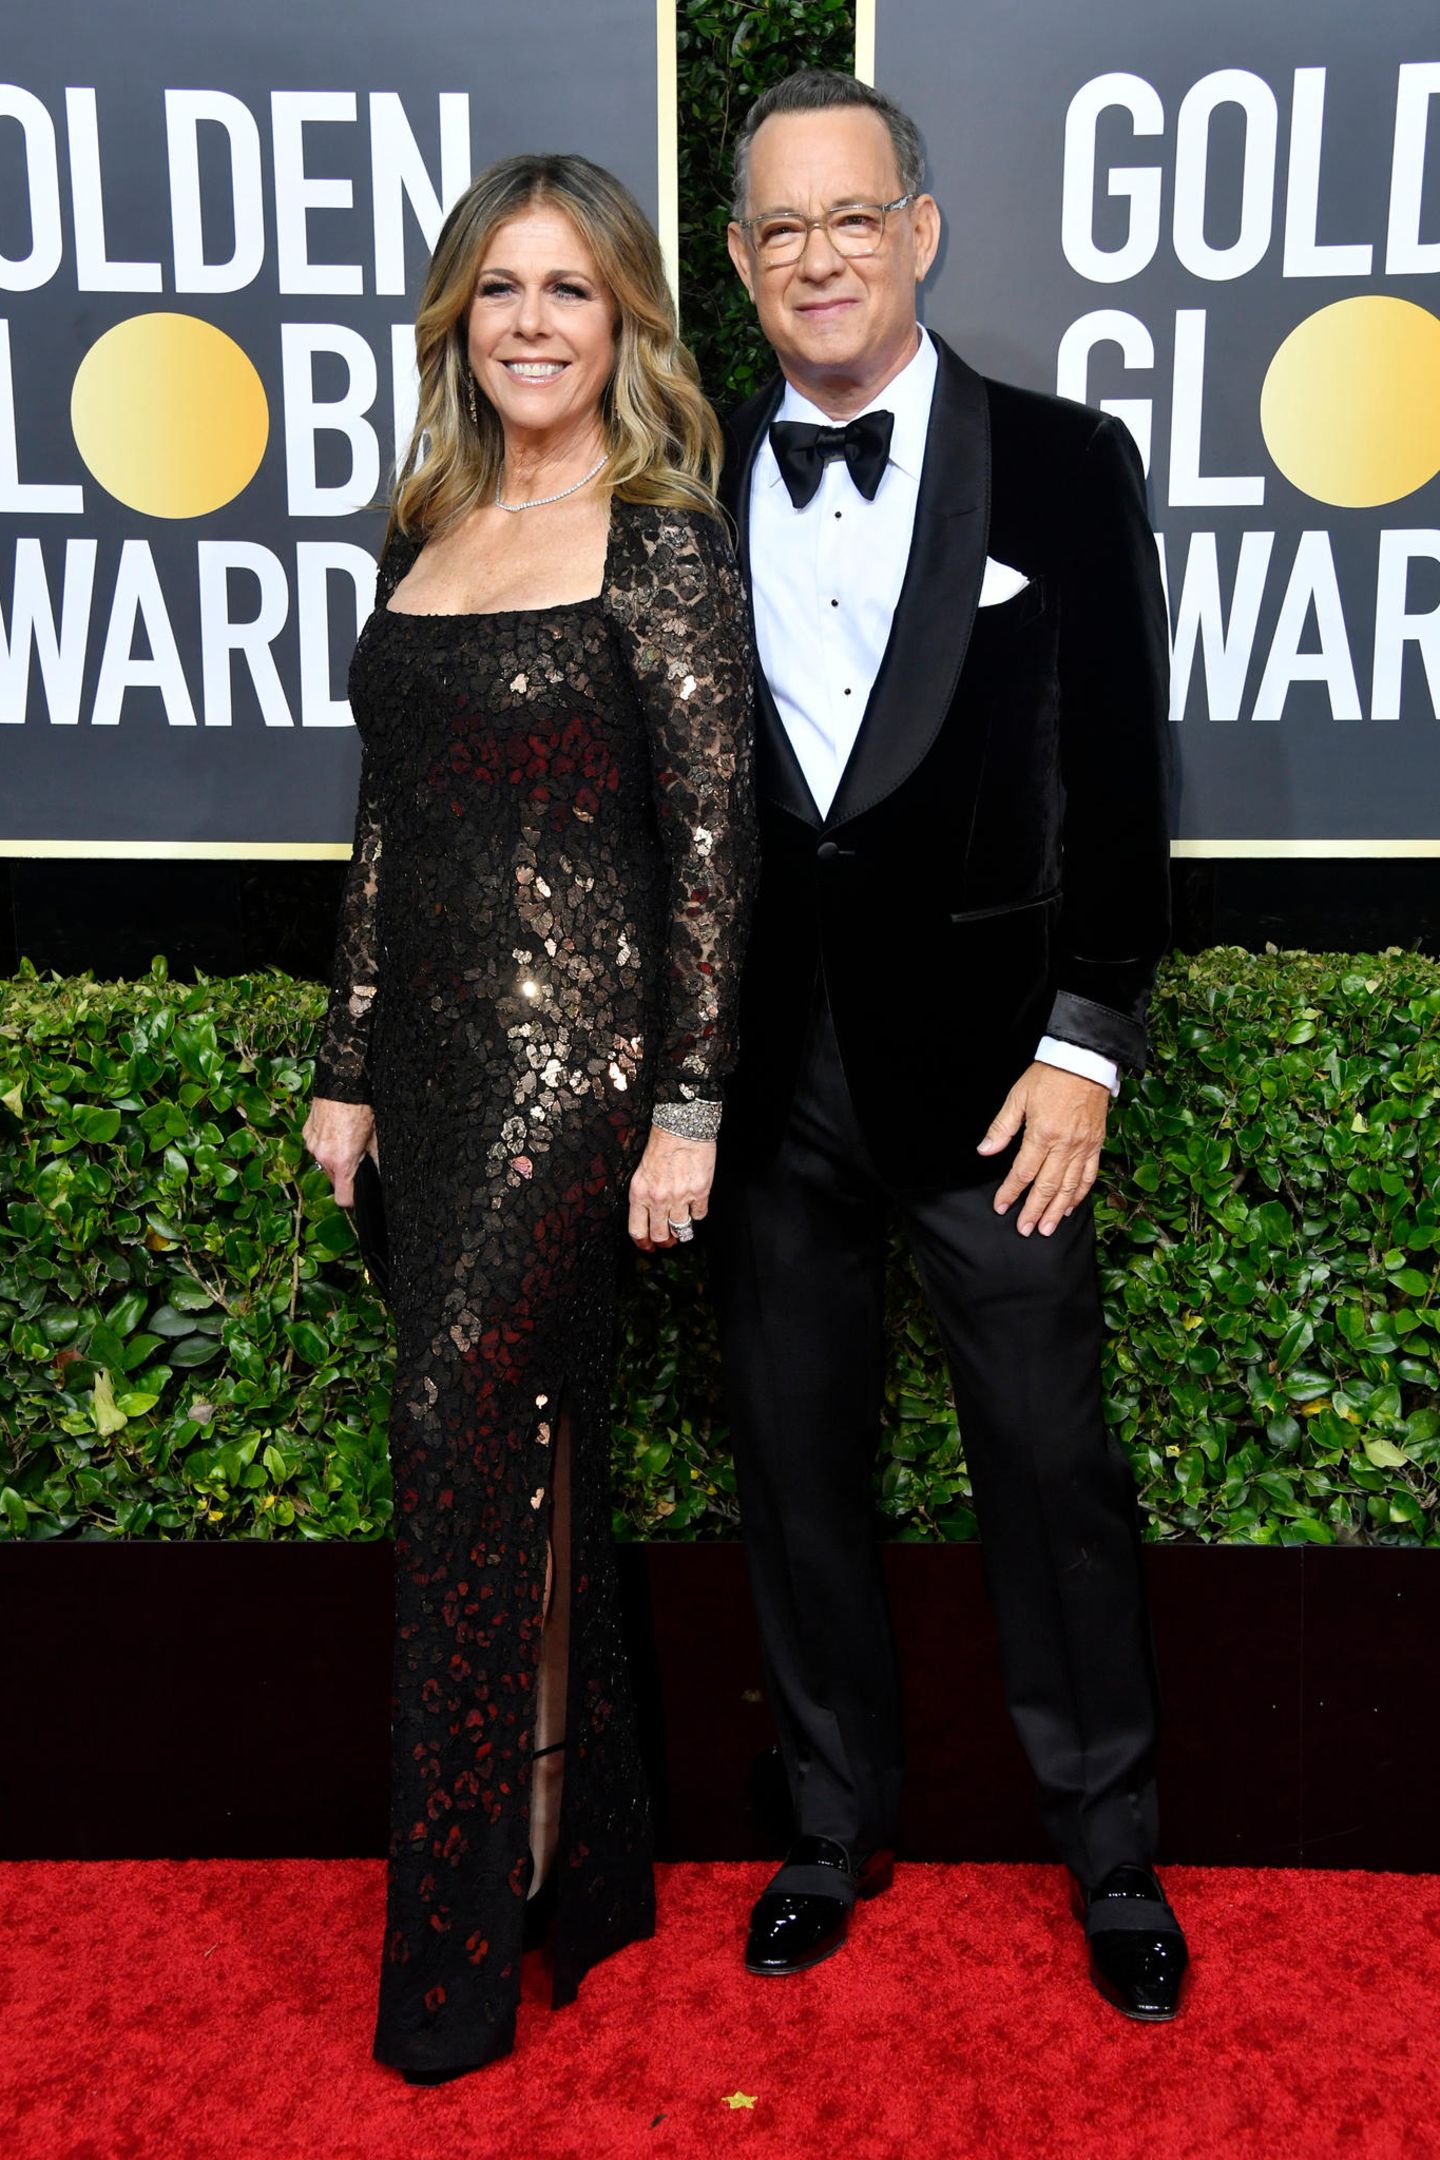 Rita Wilson im schwarzgoldenen Glitzer-Look und Tom Hanks im Tuxedo gehören zu den Glamour-Paaren des Abends.